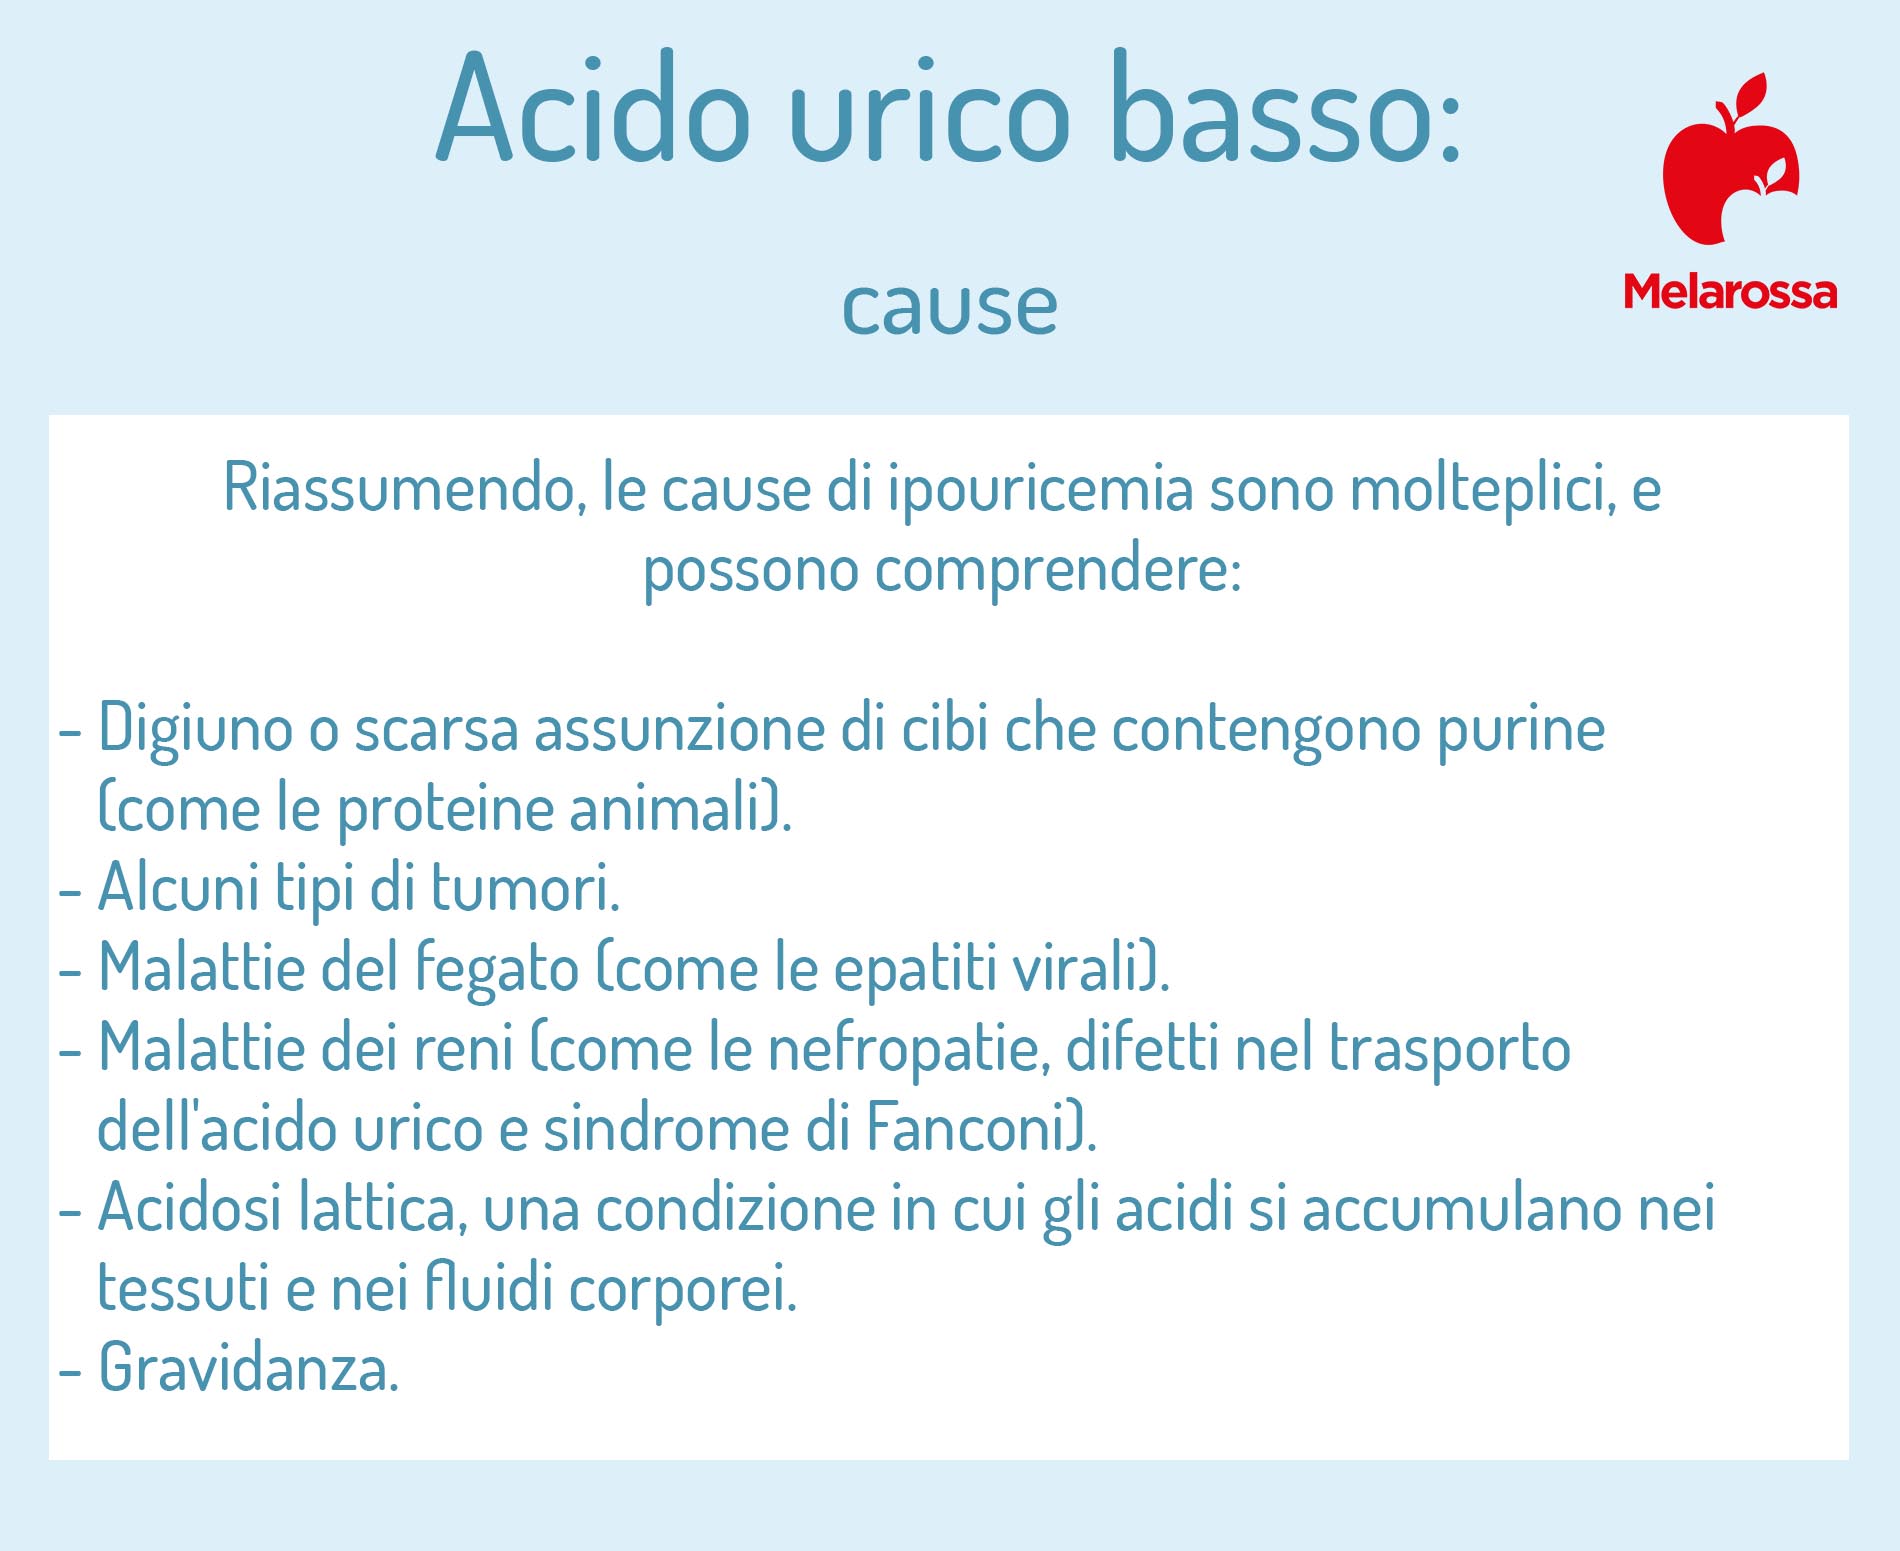 acido urico basso: cause